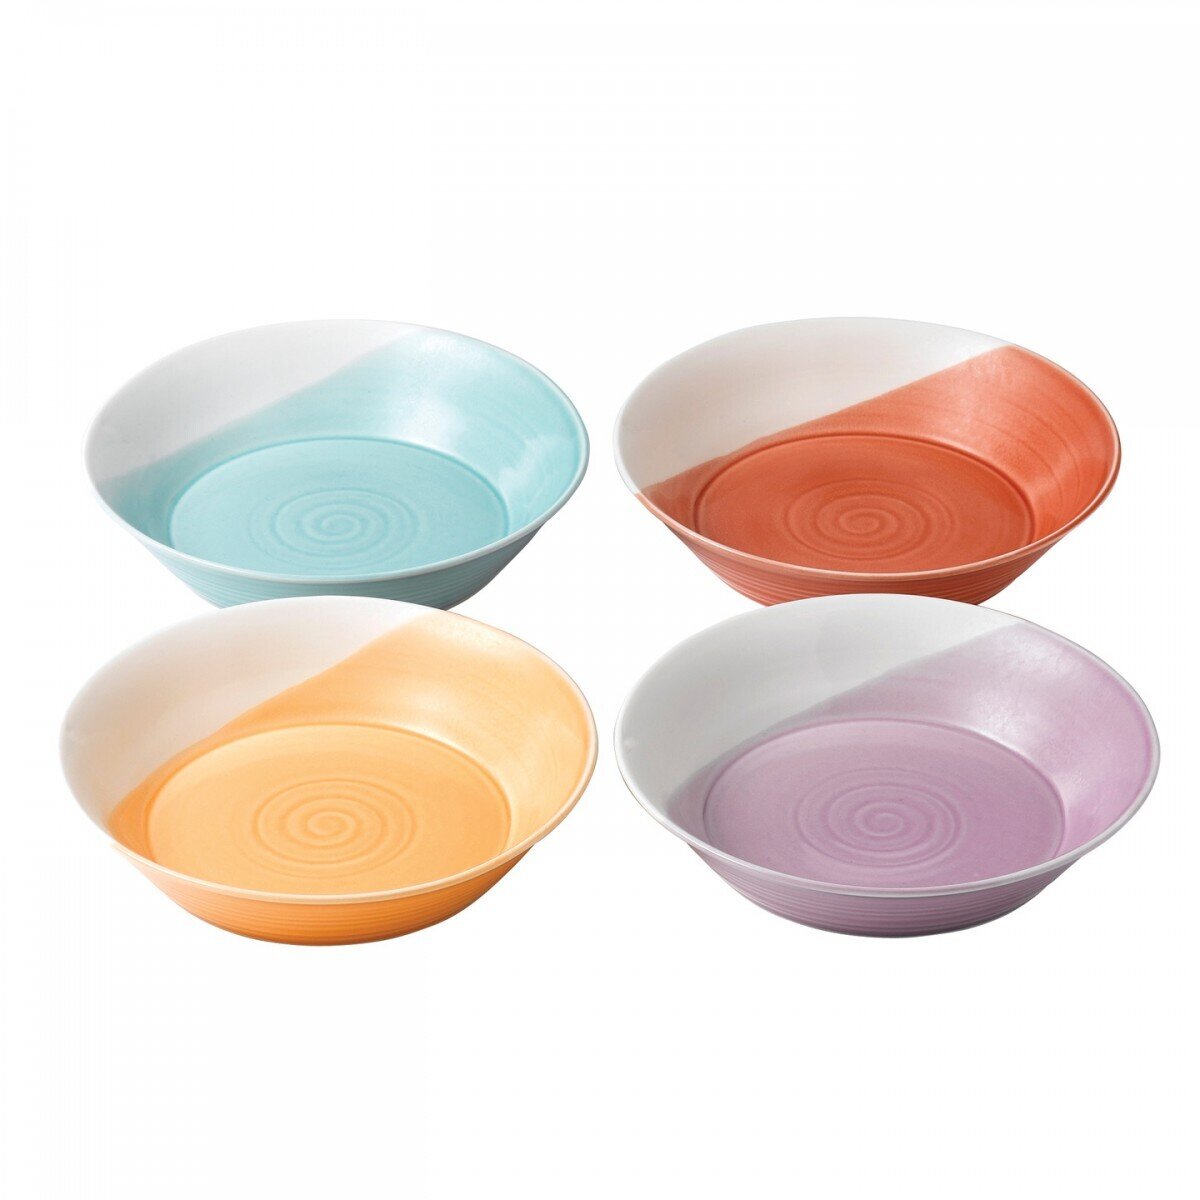 Royal Doulton 1815 Bright Colors Mixed Patterns Pasta Bowls 9.1 Inch Set of 4